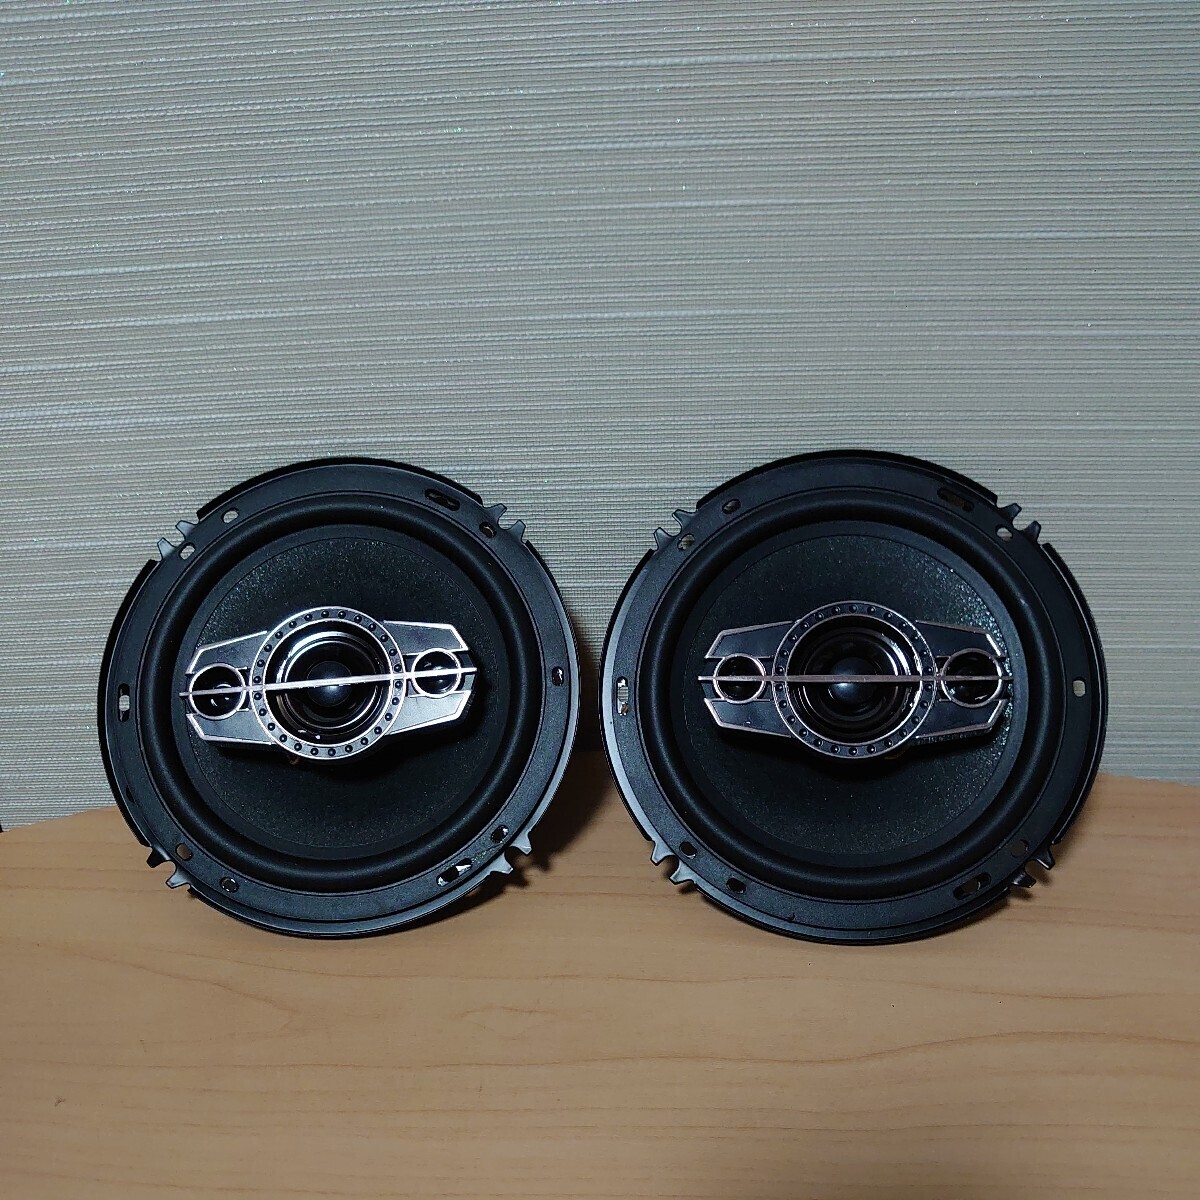  unused Pioneer Pioneer car speaker 16cm TS-A1695S HiFi same axis speaker custom parts box none 